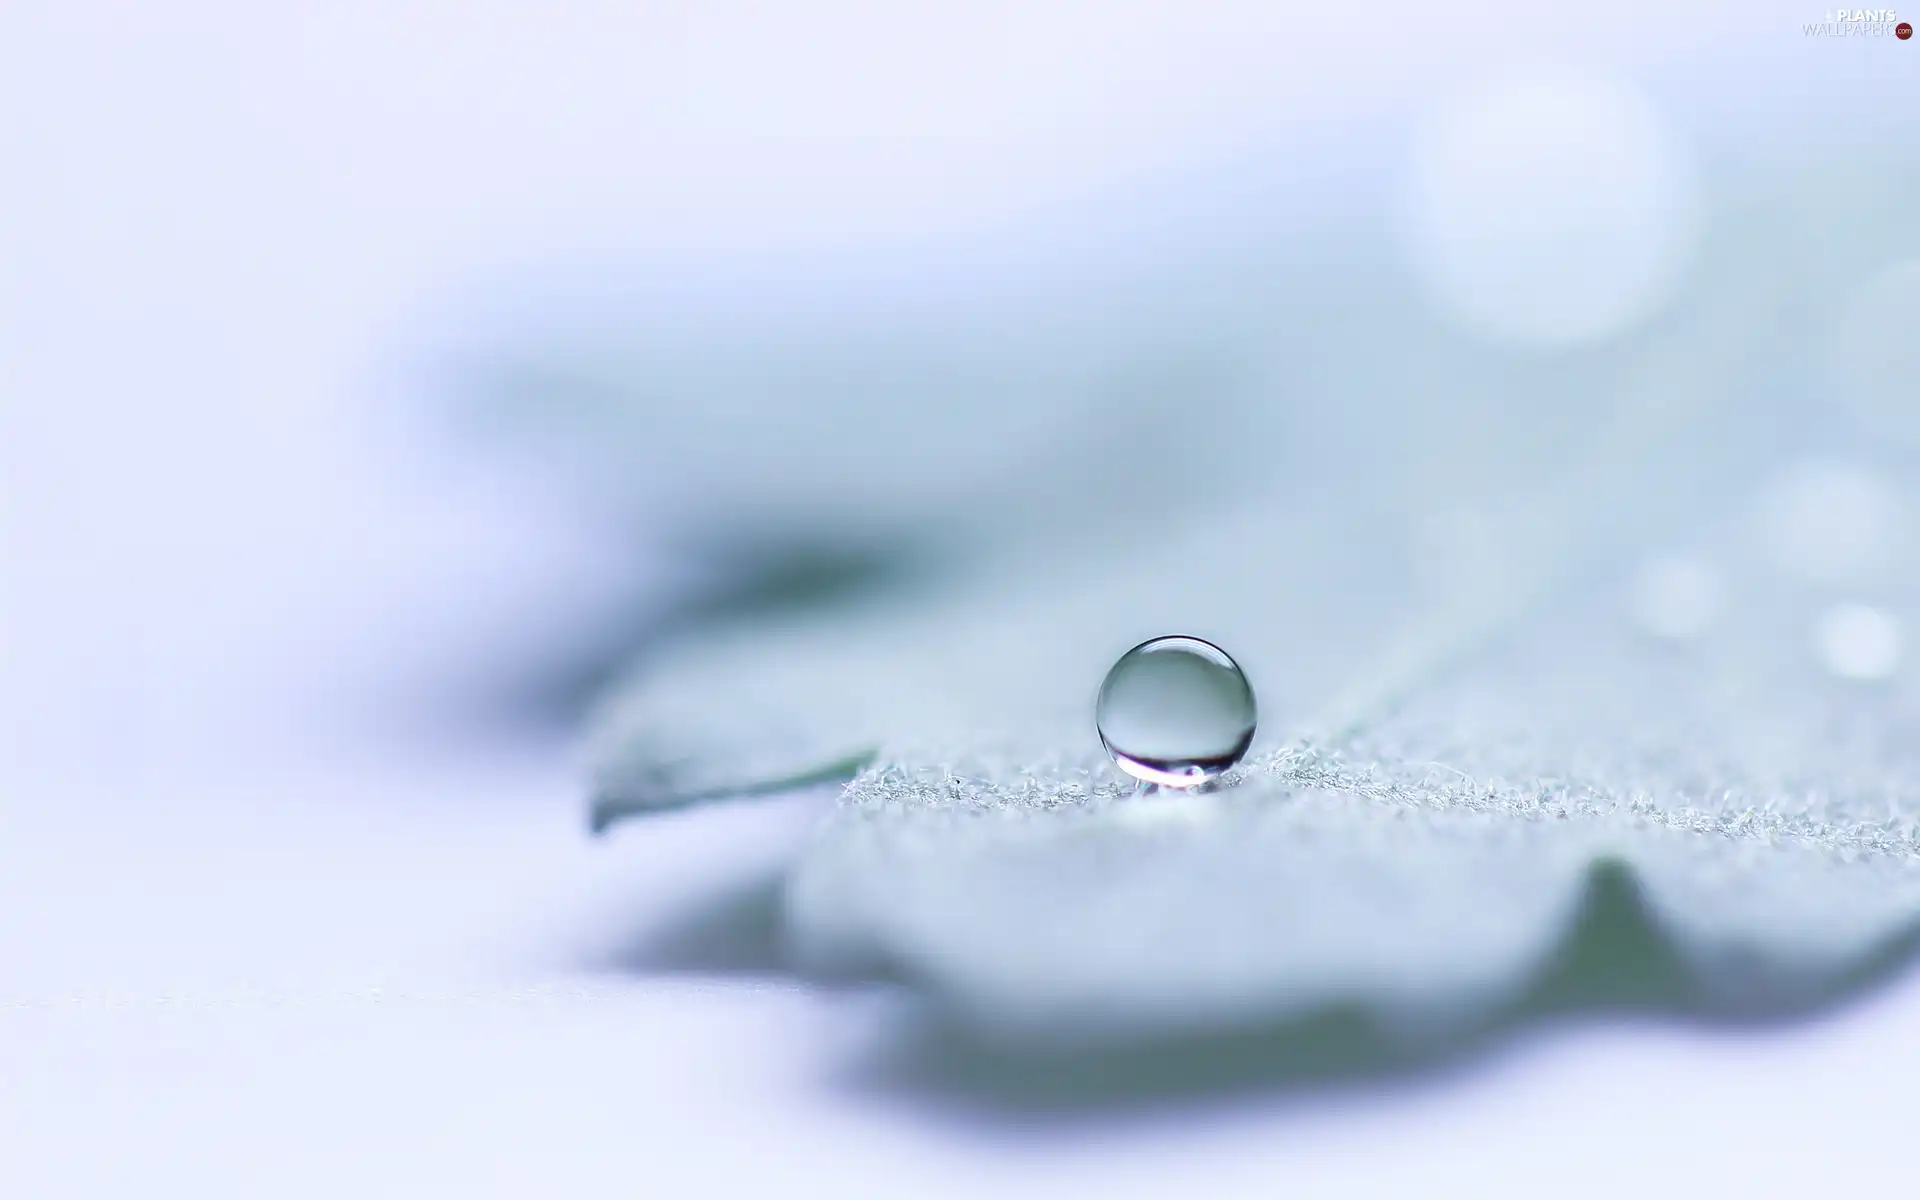 water, leaf, drop